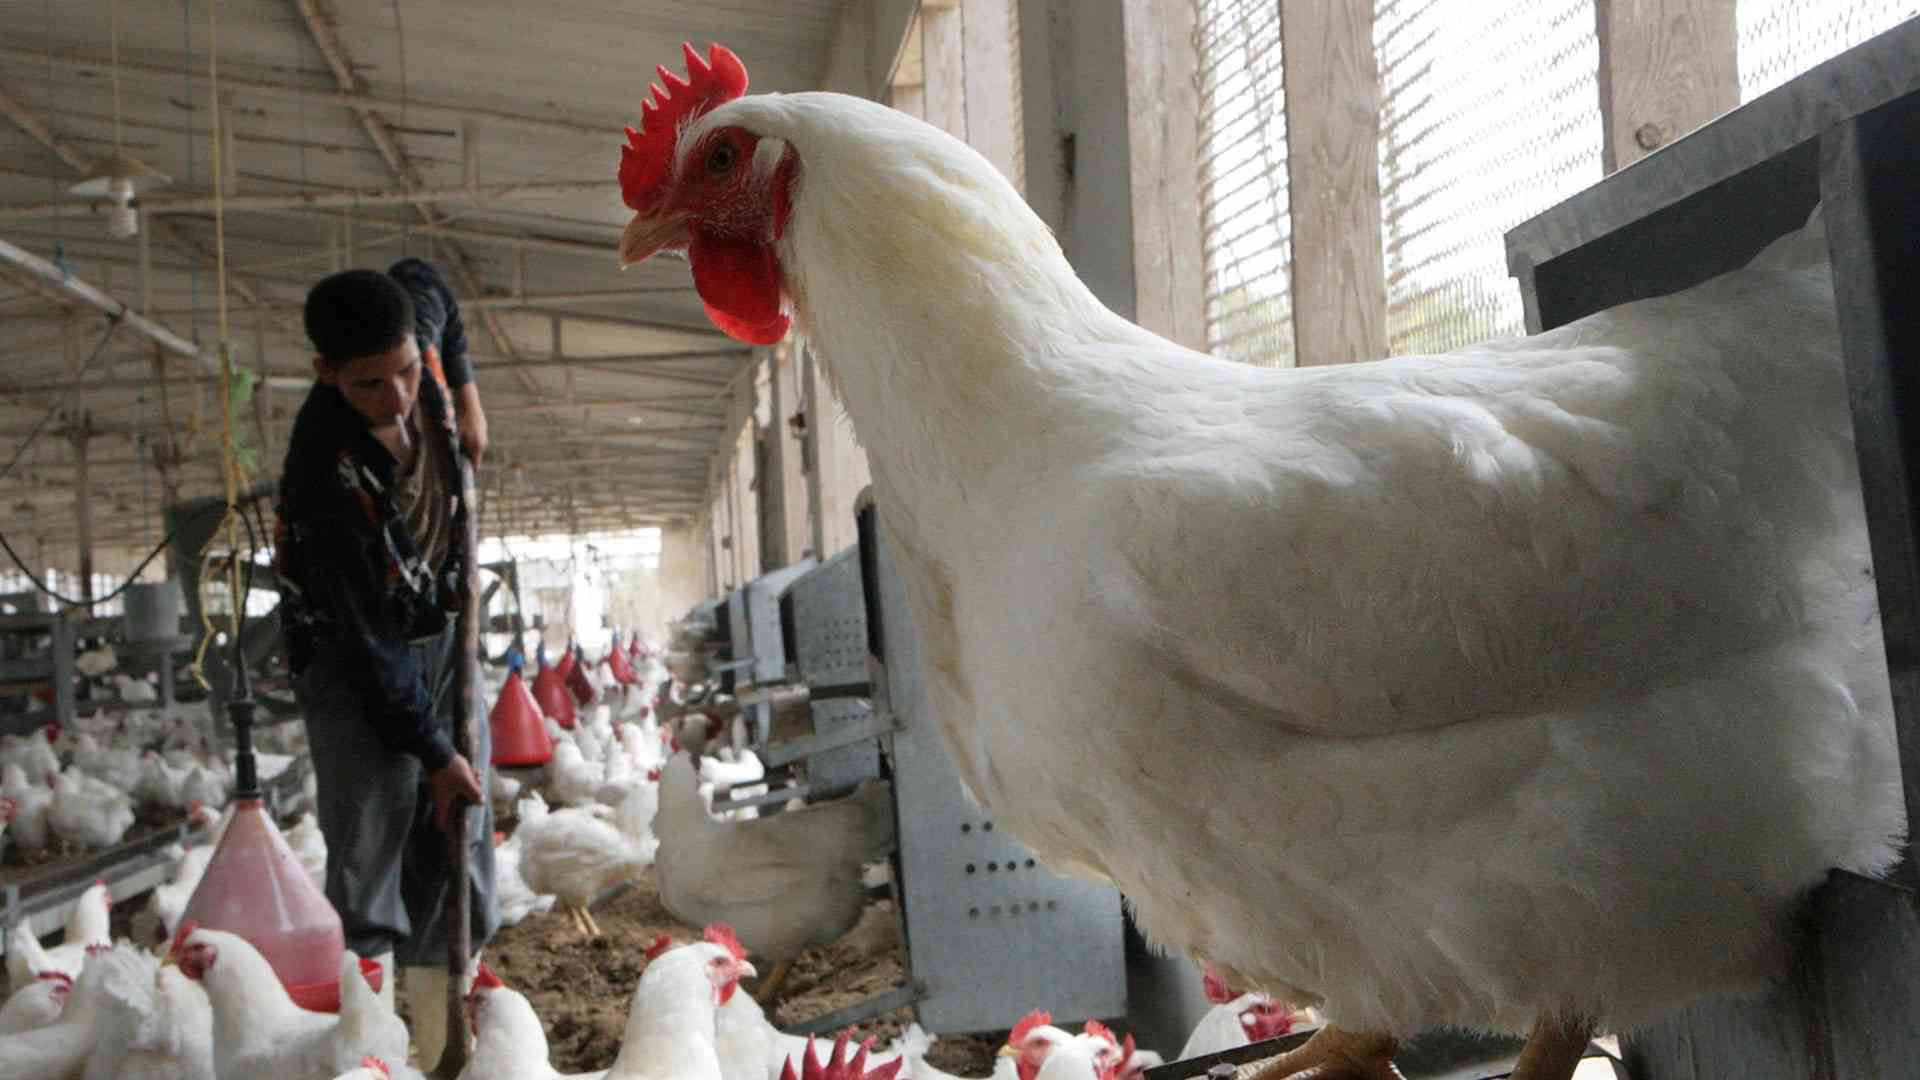 حماية المستهلك: فرصة للشركات الكبرى للسيطرة على سوق الدجاج